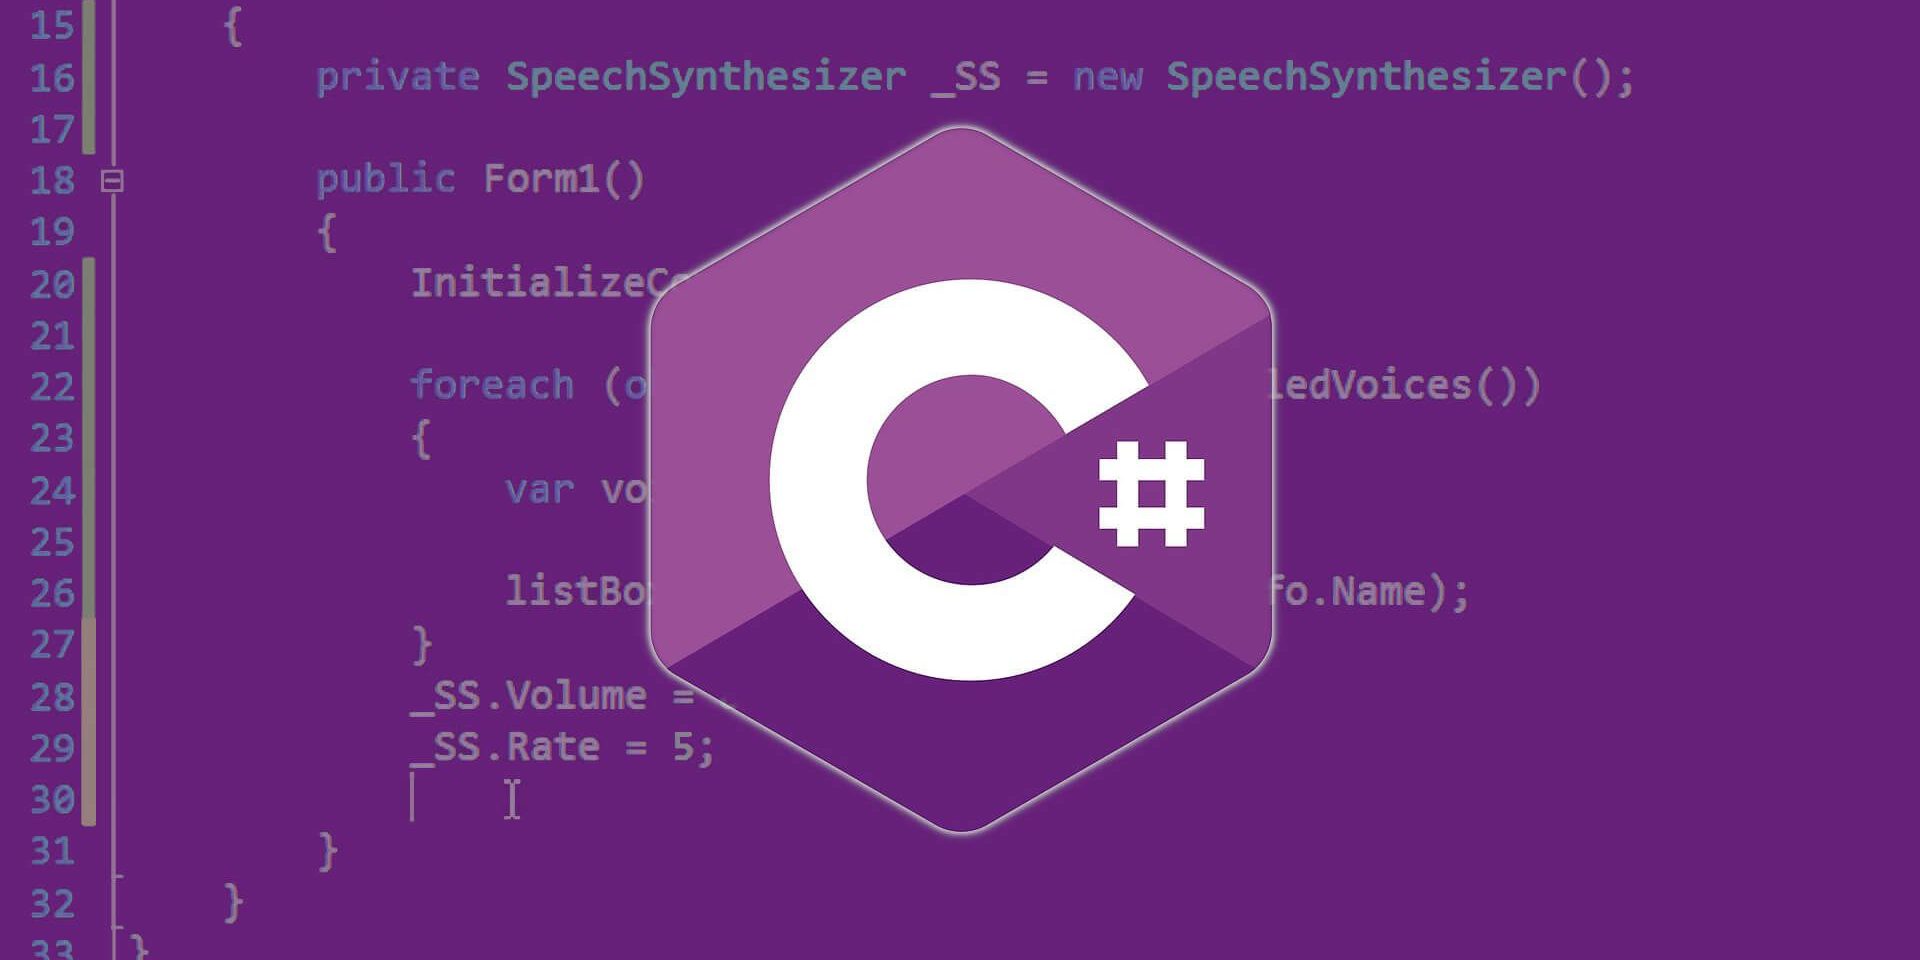 C# và C++ nên chọn học gì?